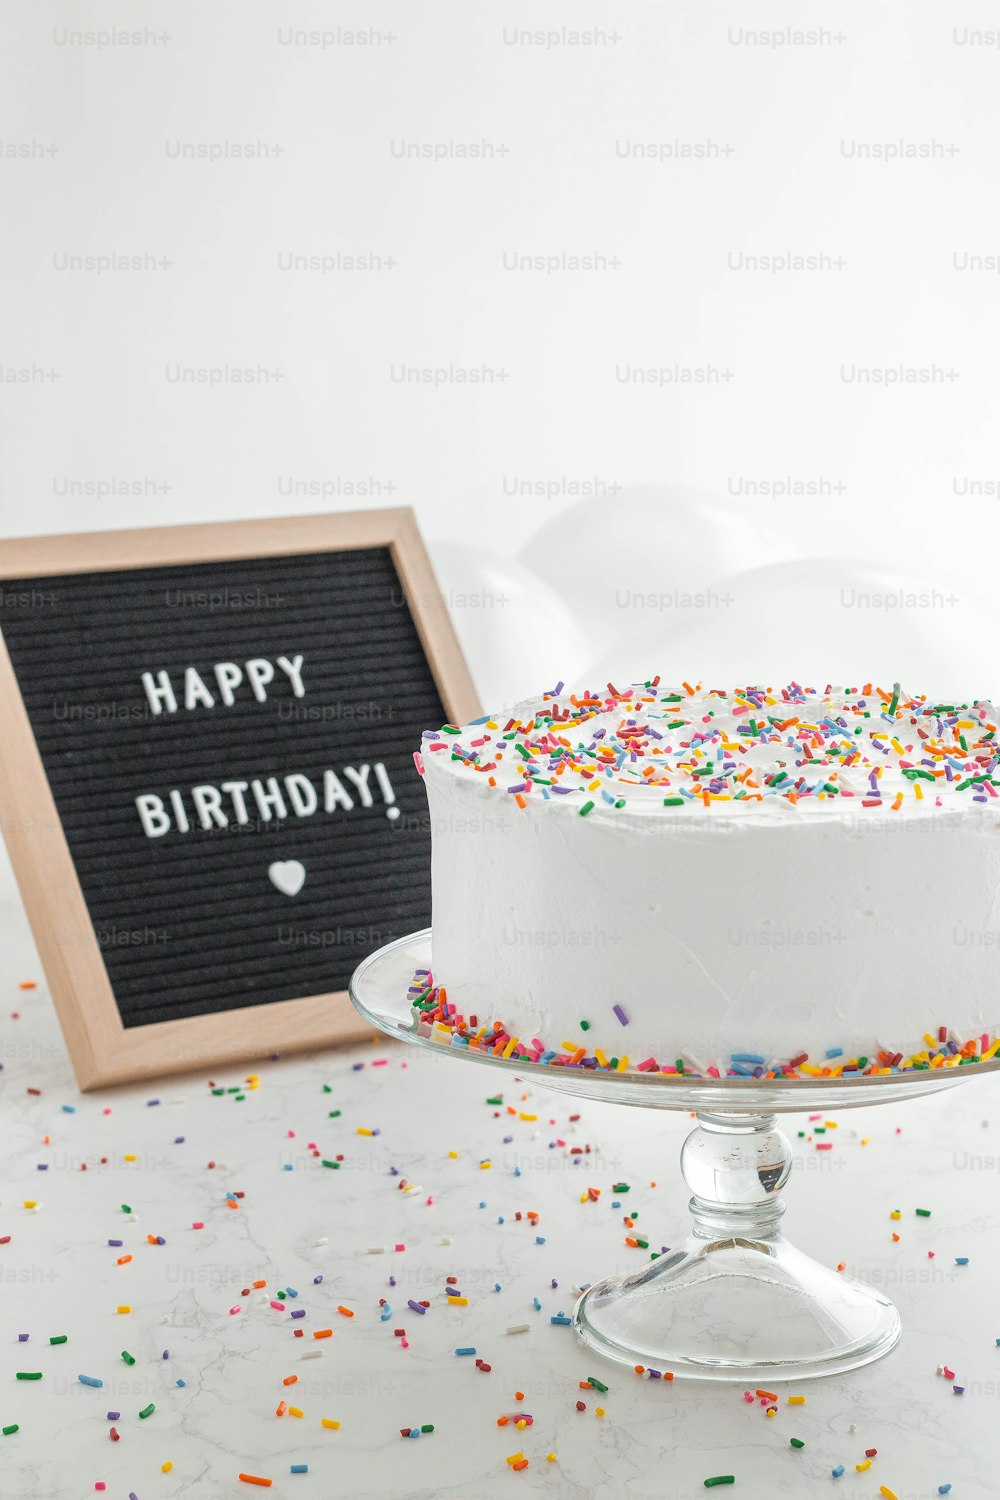 una torta di compleanno con spruzzate e un cartello alla lavagna